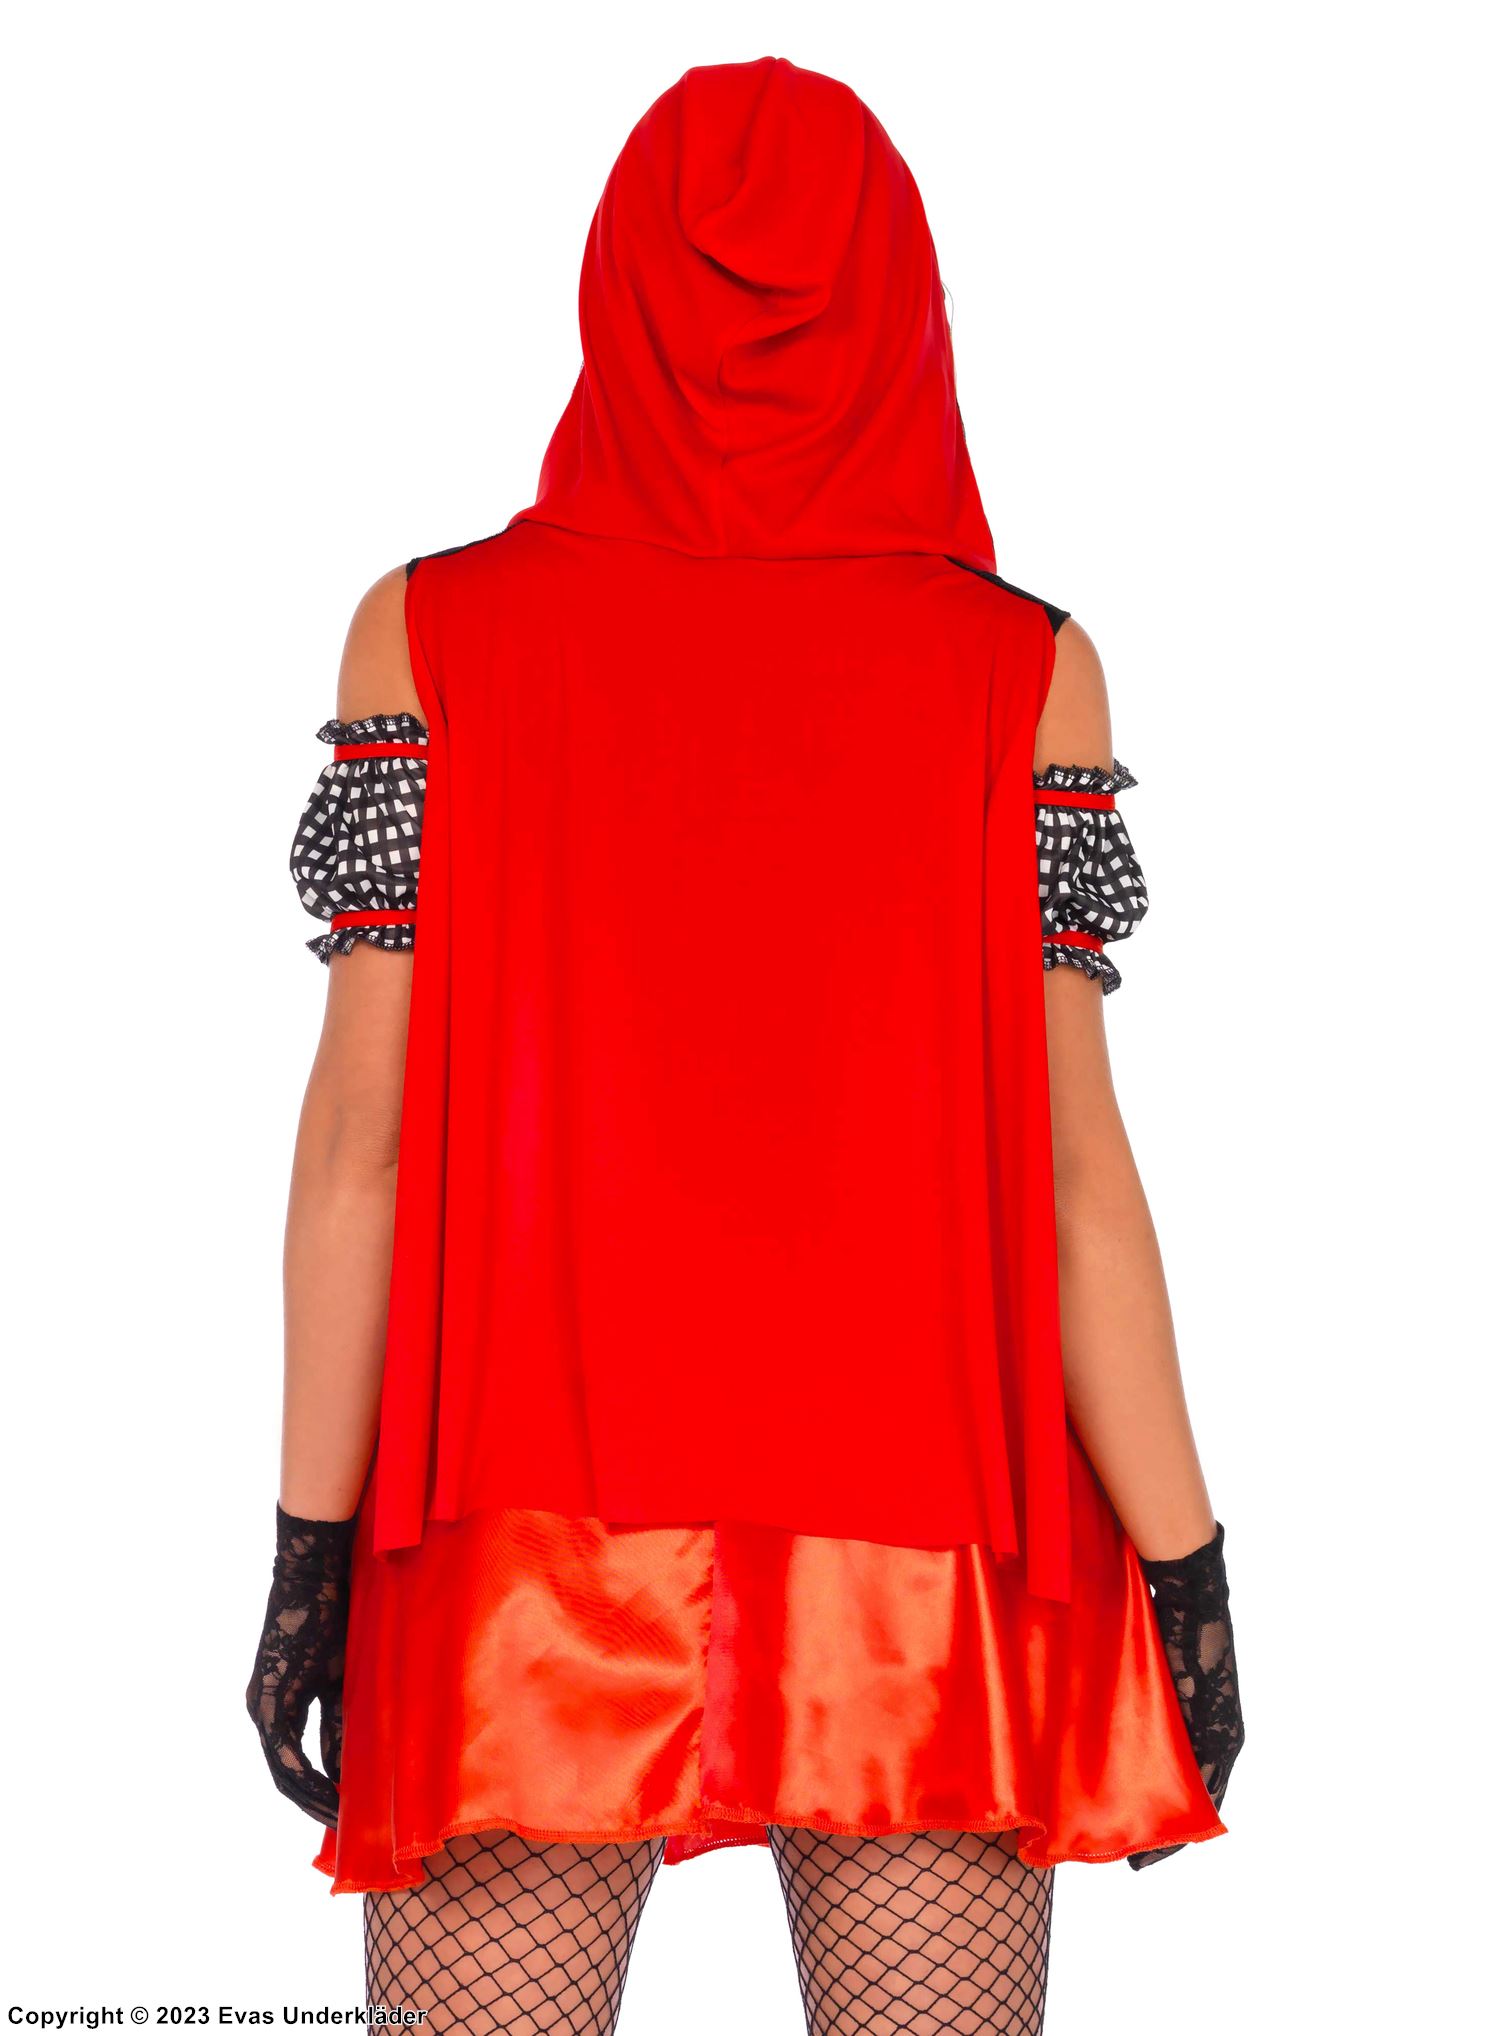 Rødhette, kostyme-kjole, snøring, off-shoulder, skotskrutet mønster